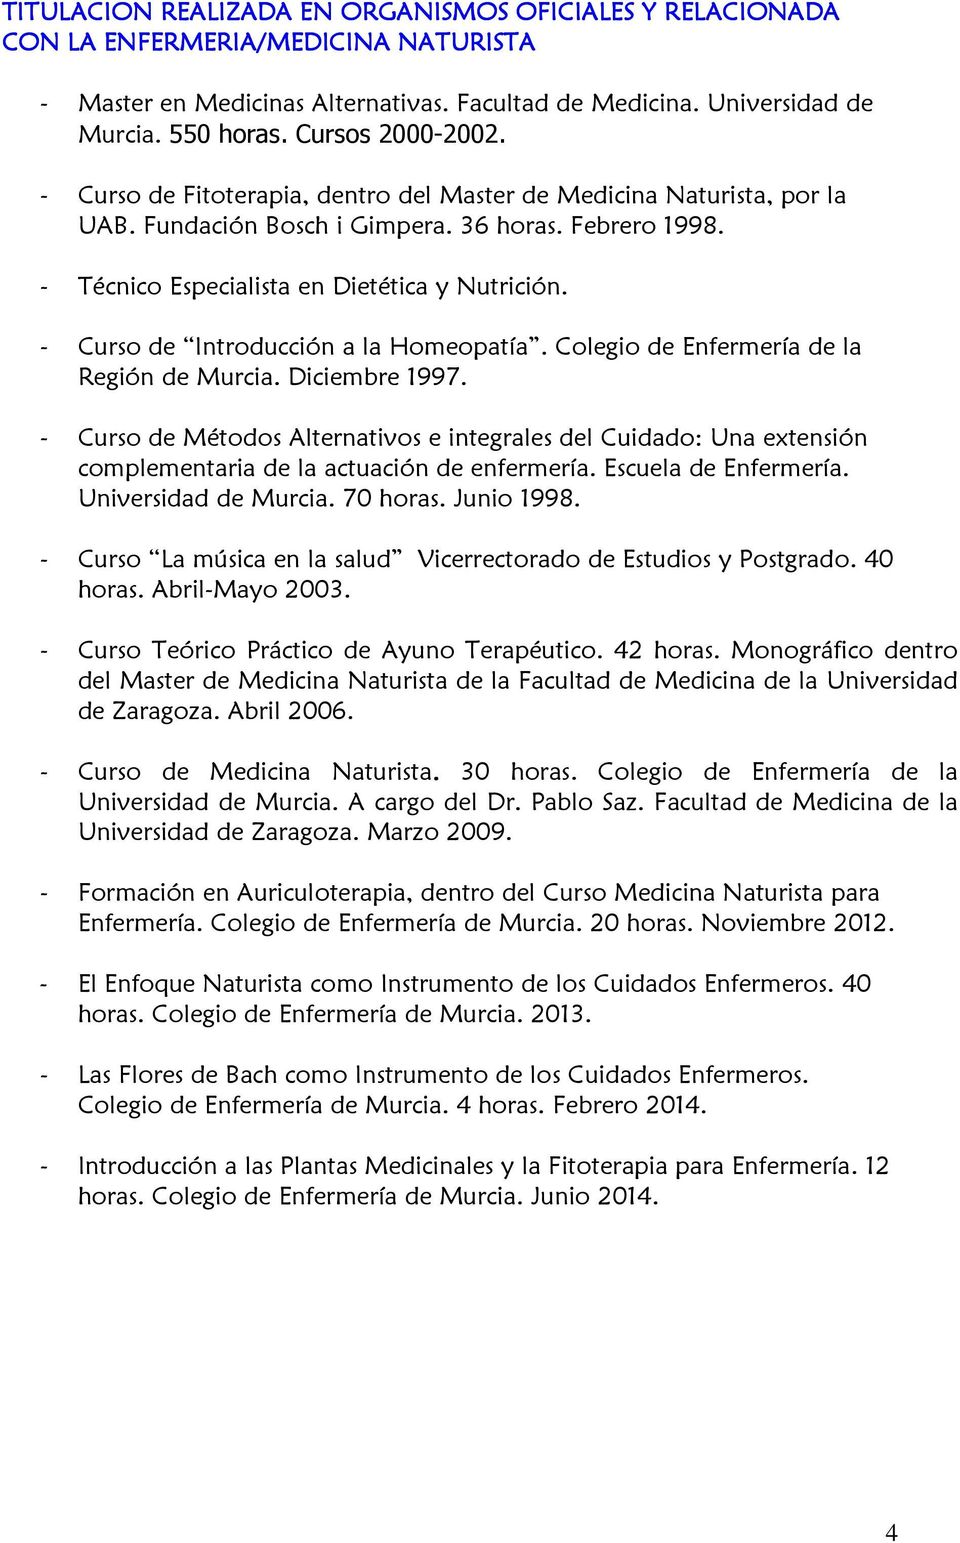 - Curso de Introducción a la Homeopatía. Colegio de Enfermería de la Región de Murcia. Diciembre 1997.